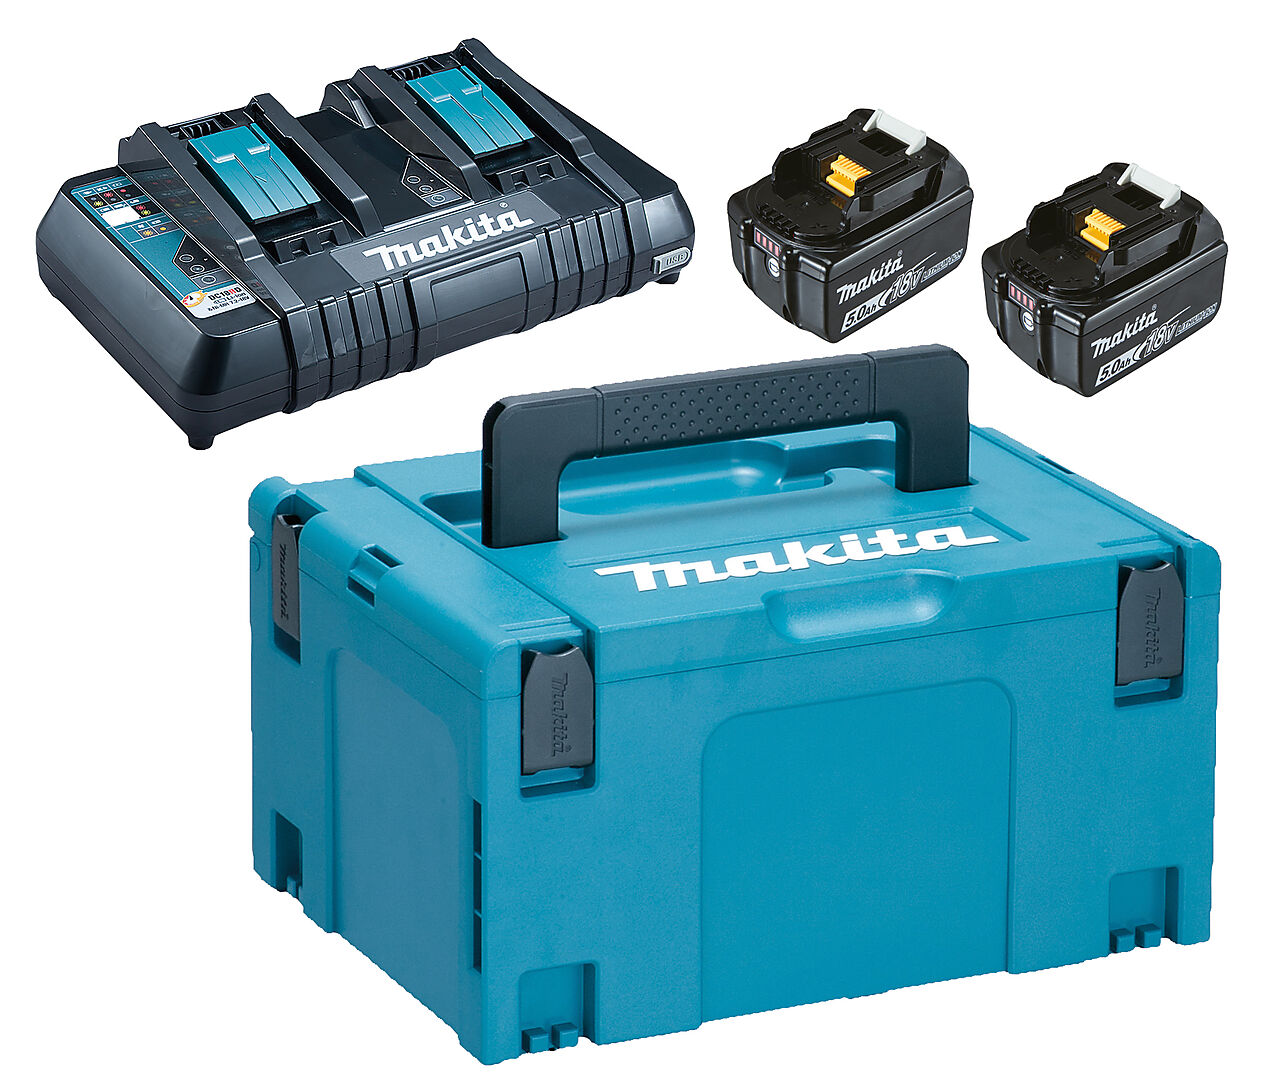 Makita Makita batteripakke 2 x 5.0 AH/DBL lader DC18RD og Makpac 1